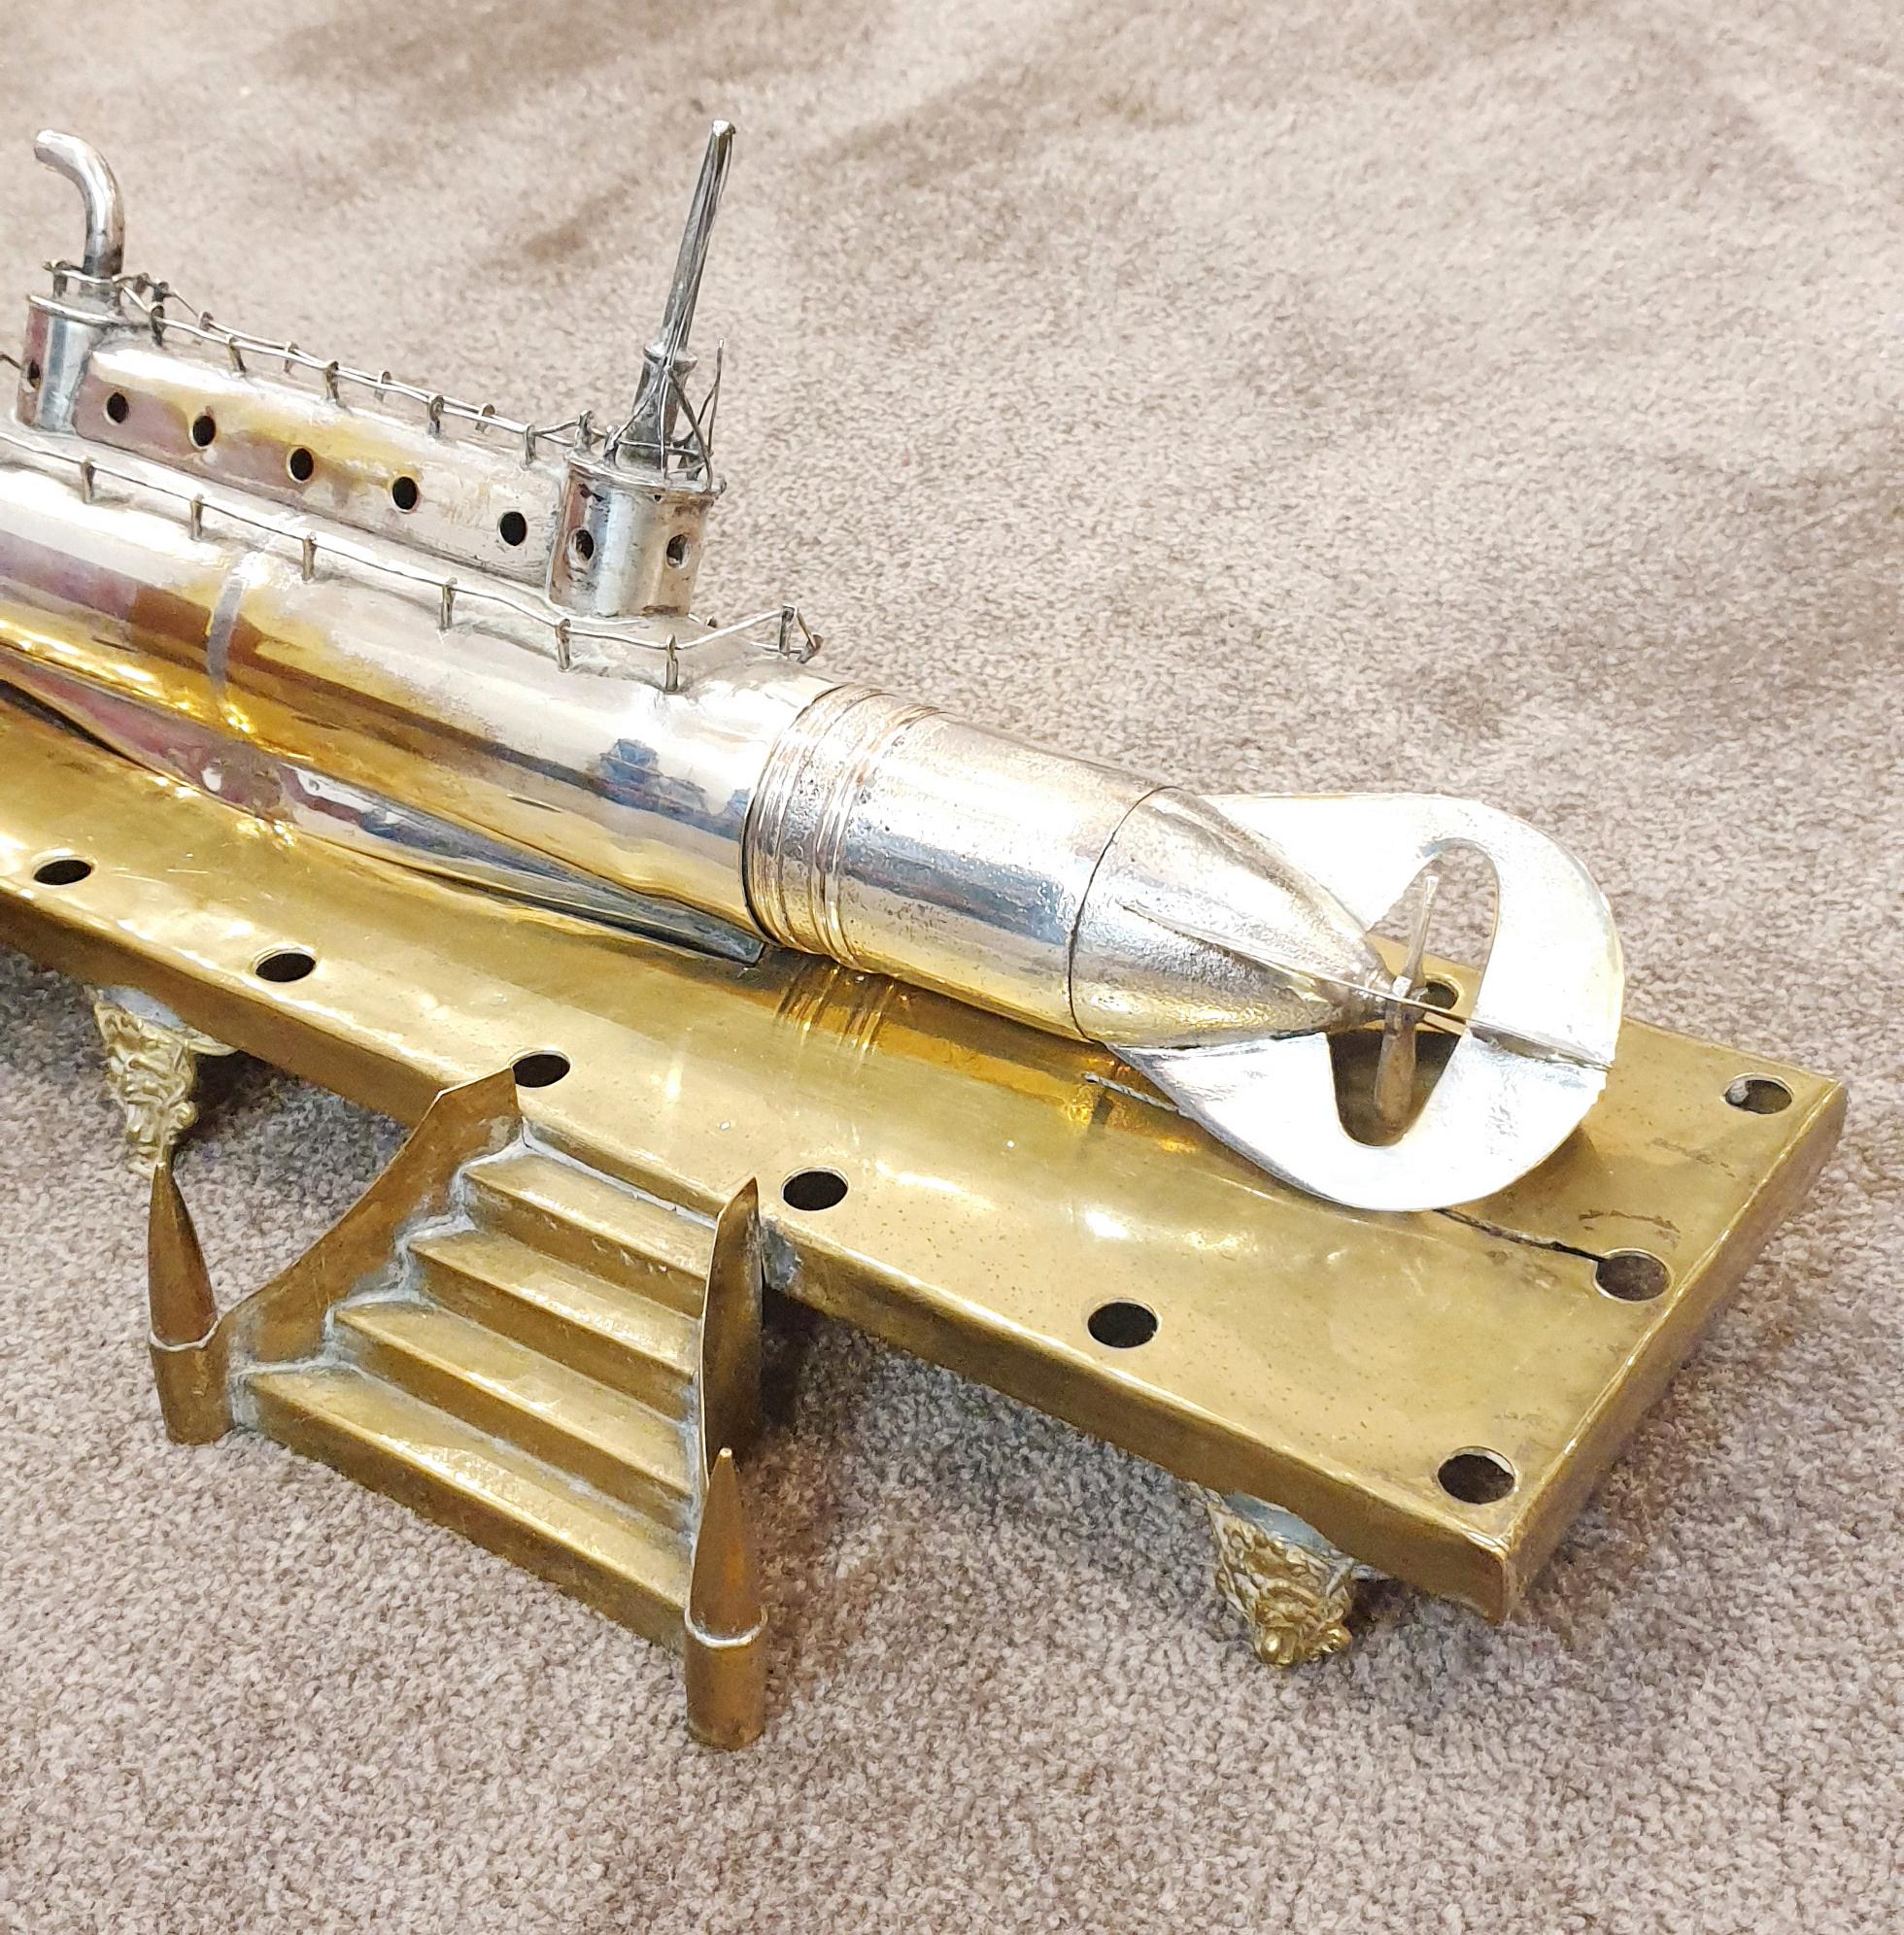 Sous-marin de la Première Guerre mondiale monté sur laiton. 
Le sous-marin a été construit à partir de balles et d'autres morceaux de laiton pour former une pièce exceptionnelle. 
Il s'agit d'un très bel objet mesurant environ 1,5 m de long :